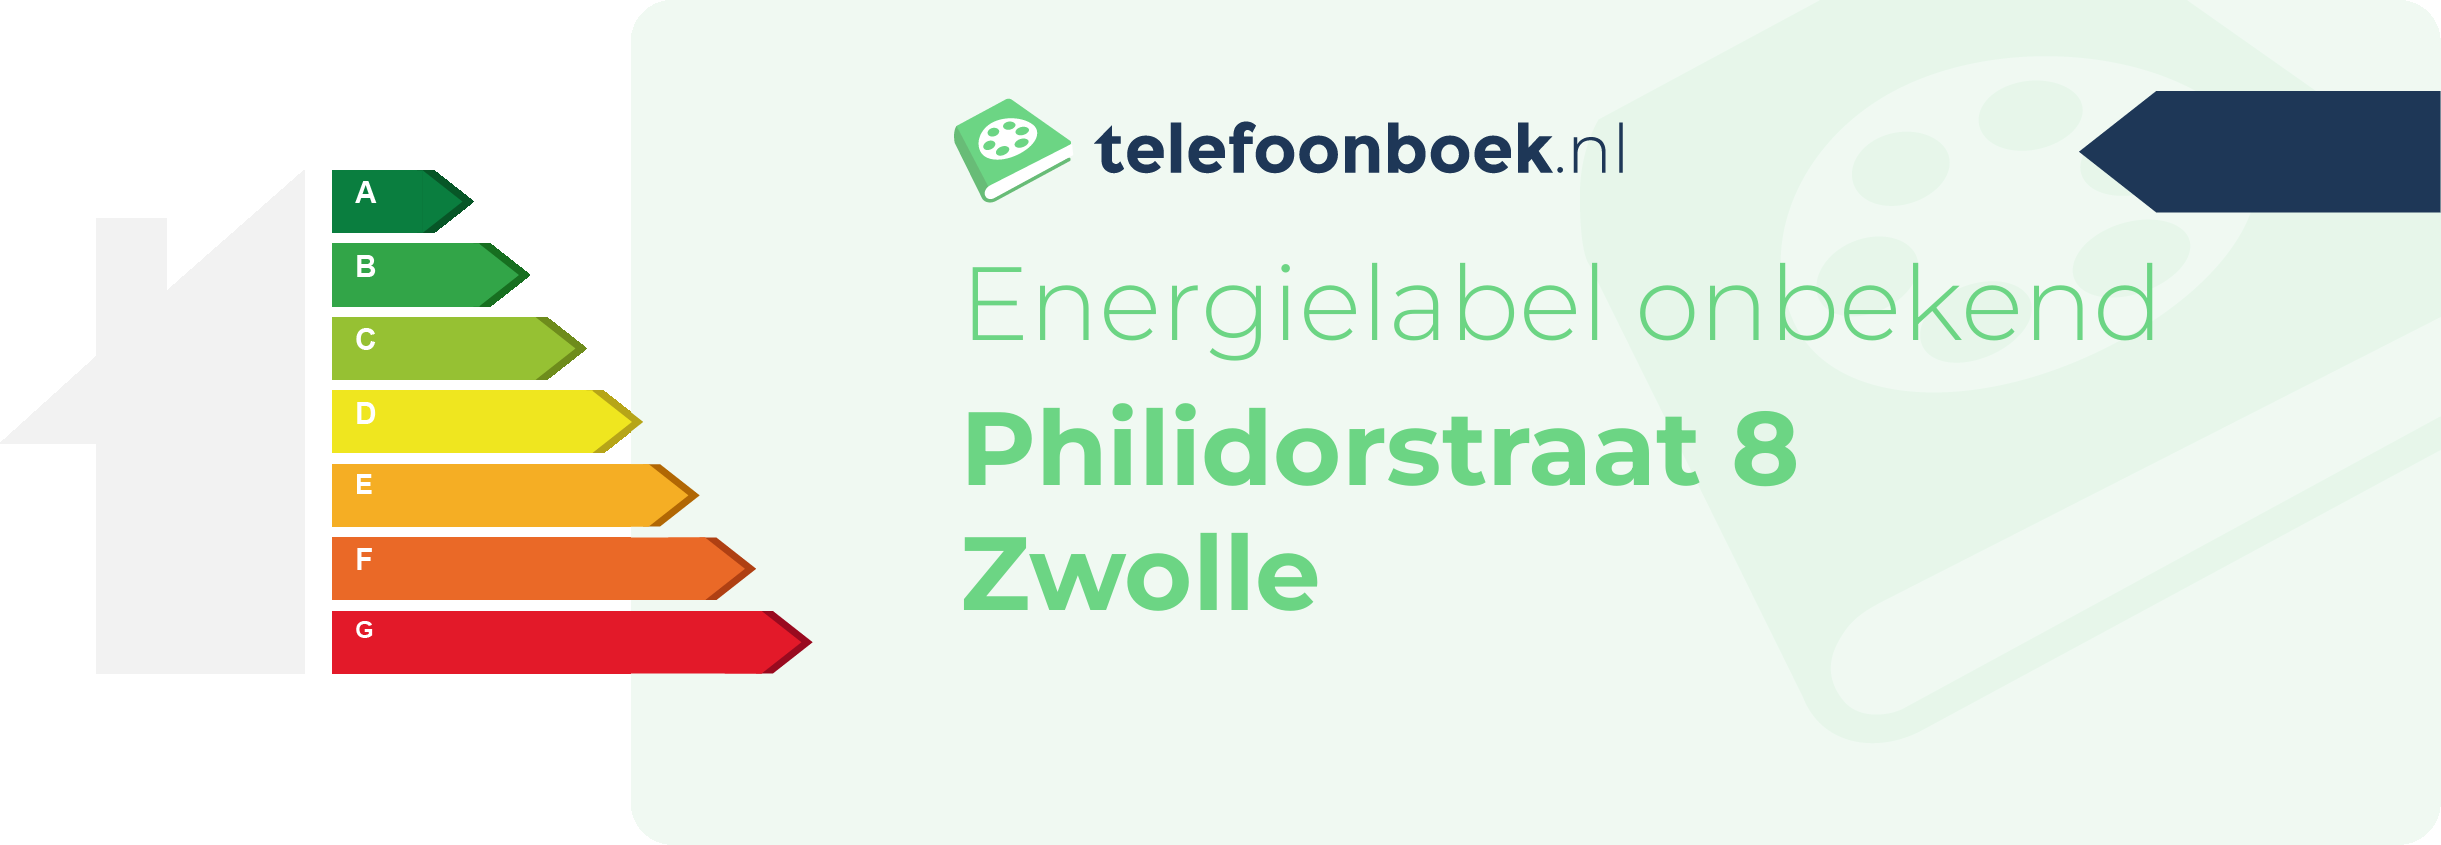 Energielabel Philidorstraat 8 Zwolle